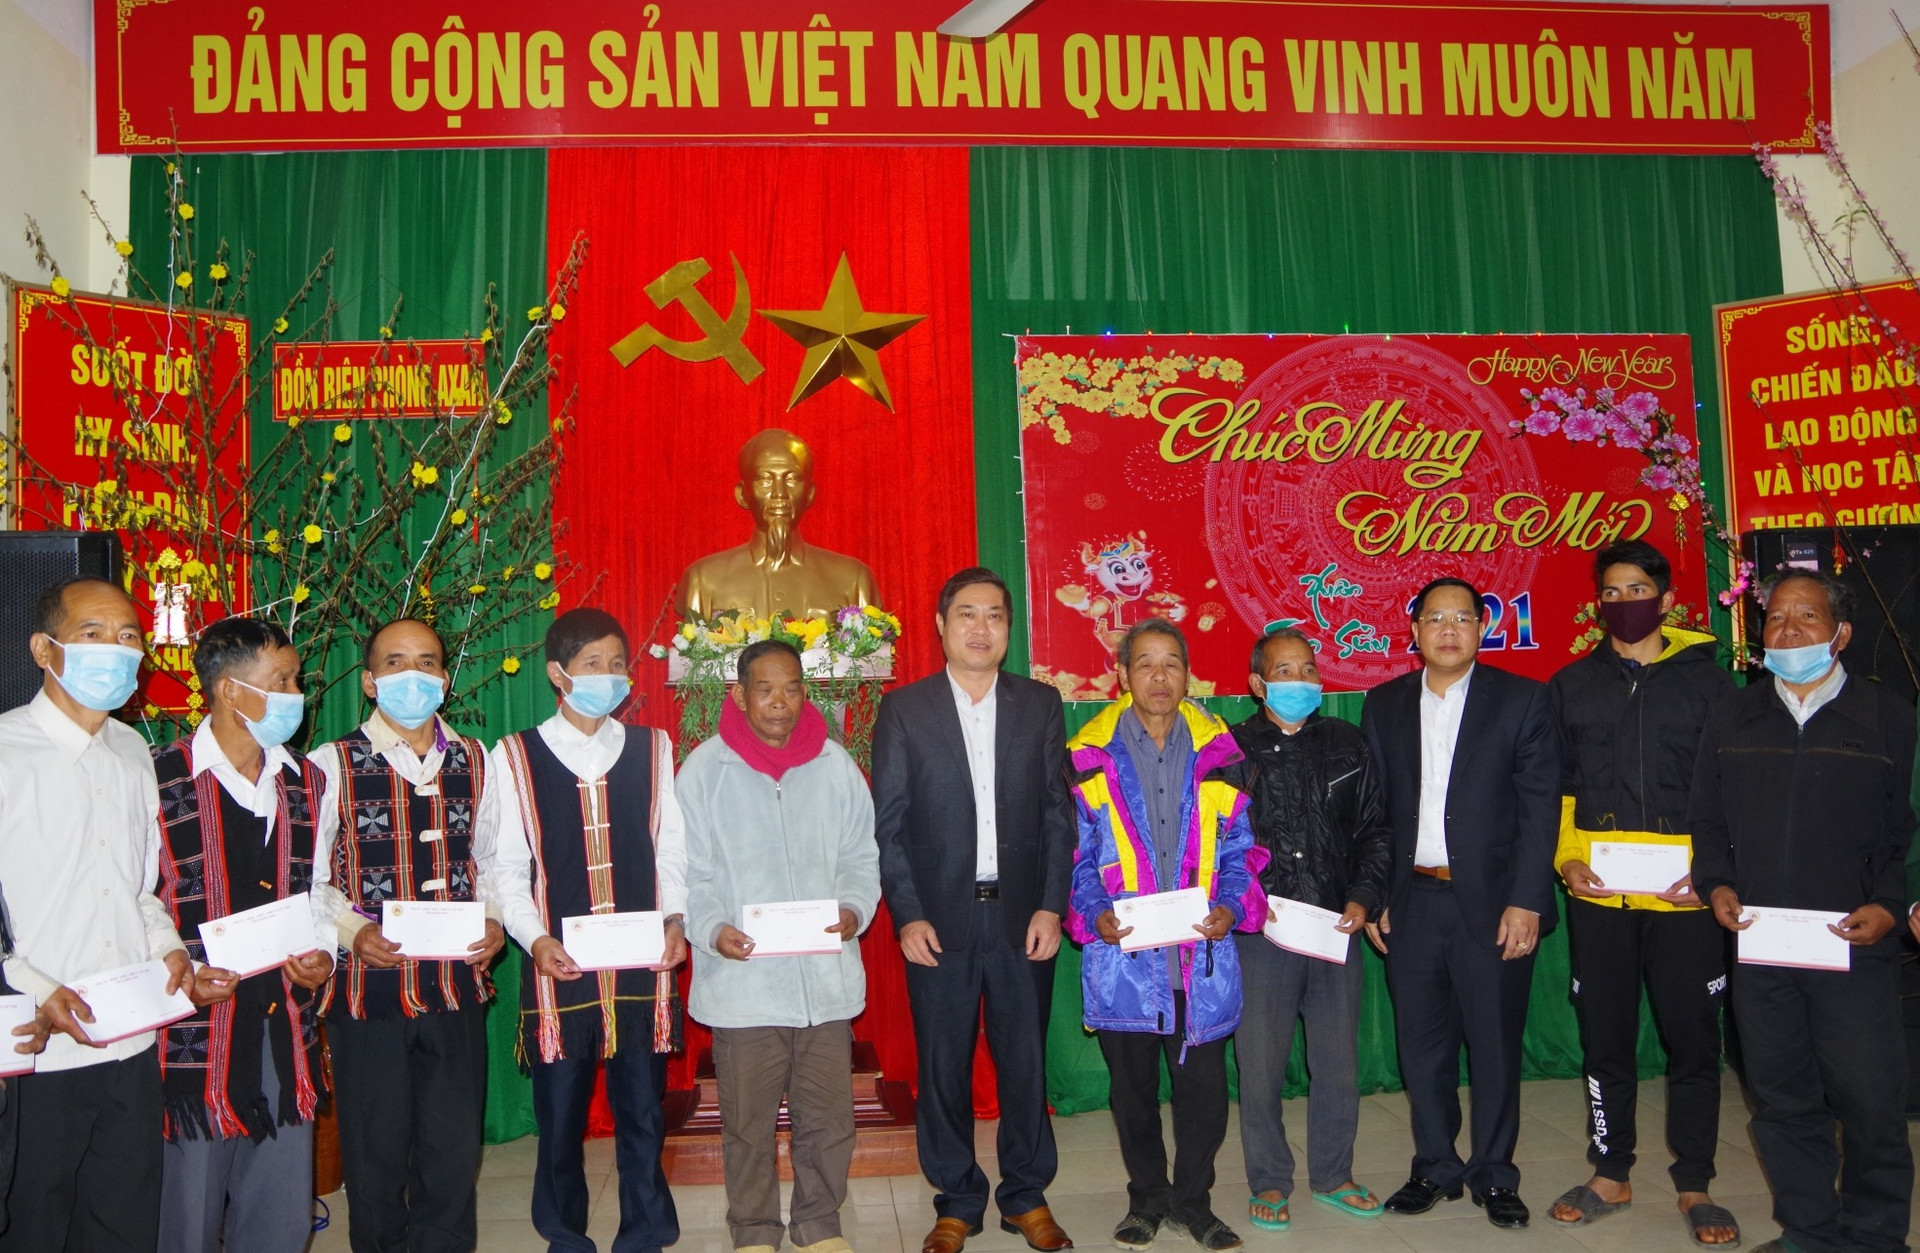 Đồng chí Phan Thái Bình - ủy viên Ban Thường vụ, Chủ nhiệm Ủy ban Kiểm tra Tỉnh ủy và đoàn công tác tặng quà Tết cho các già làng, người có uy tín tại 2 xã A Xan và Tr’Hy.